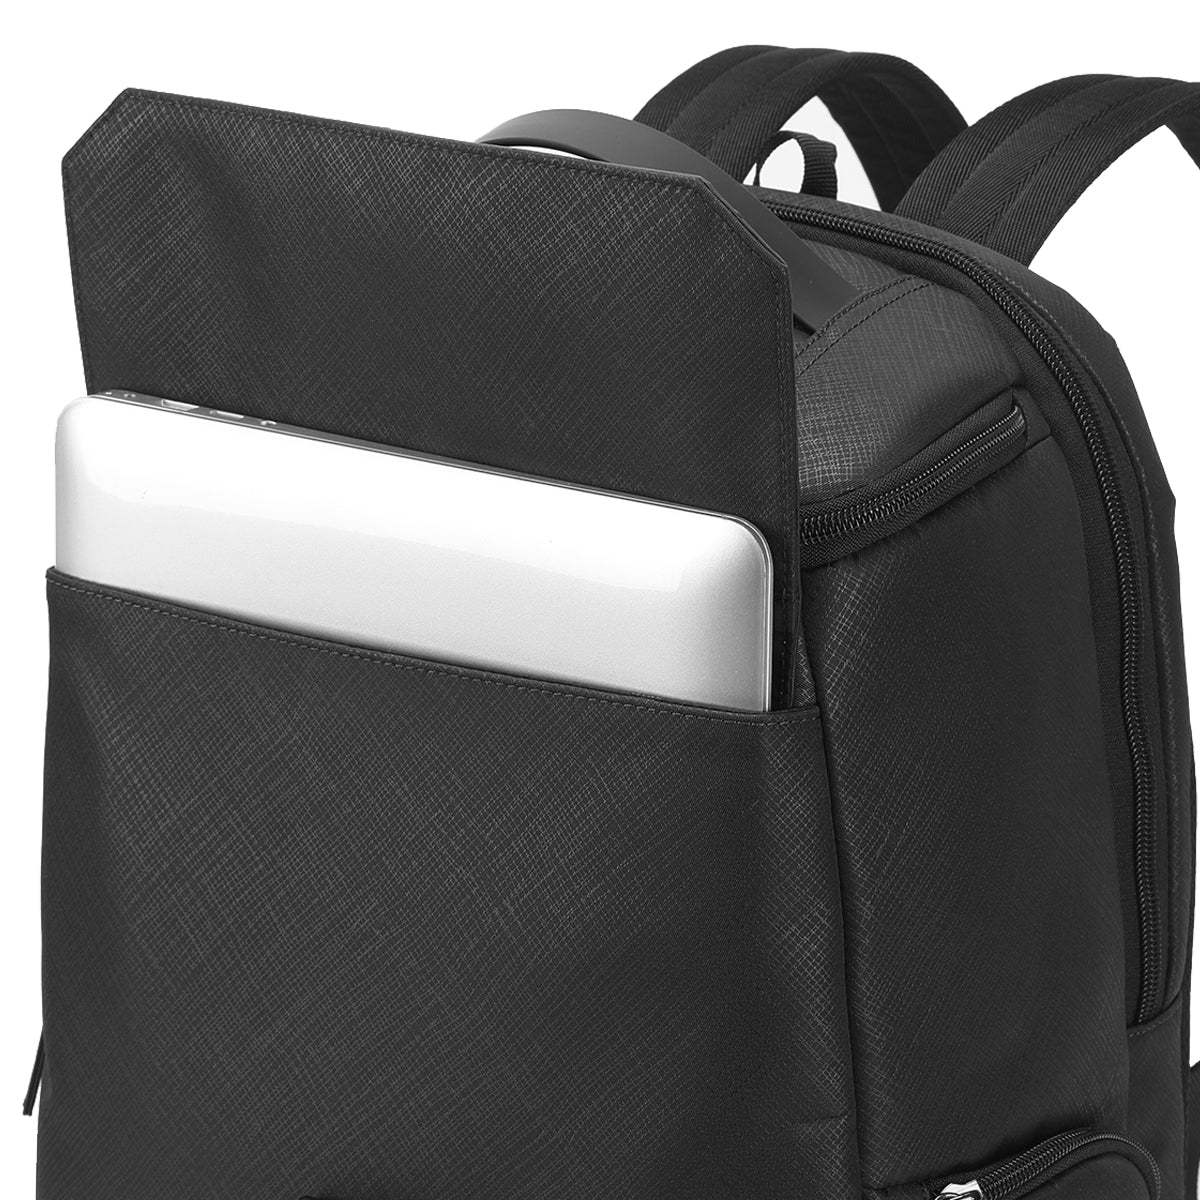 Tigernu TB-L Lead Top Laptop Backpack Black